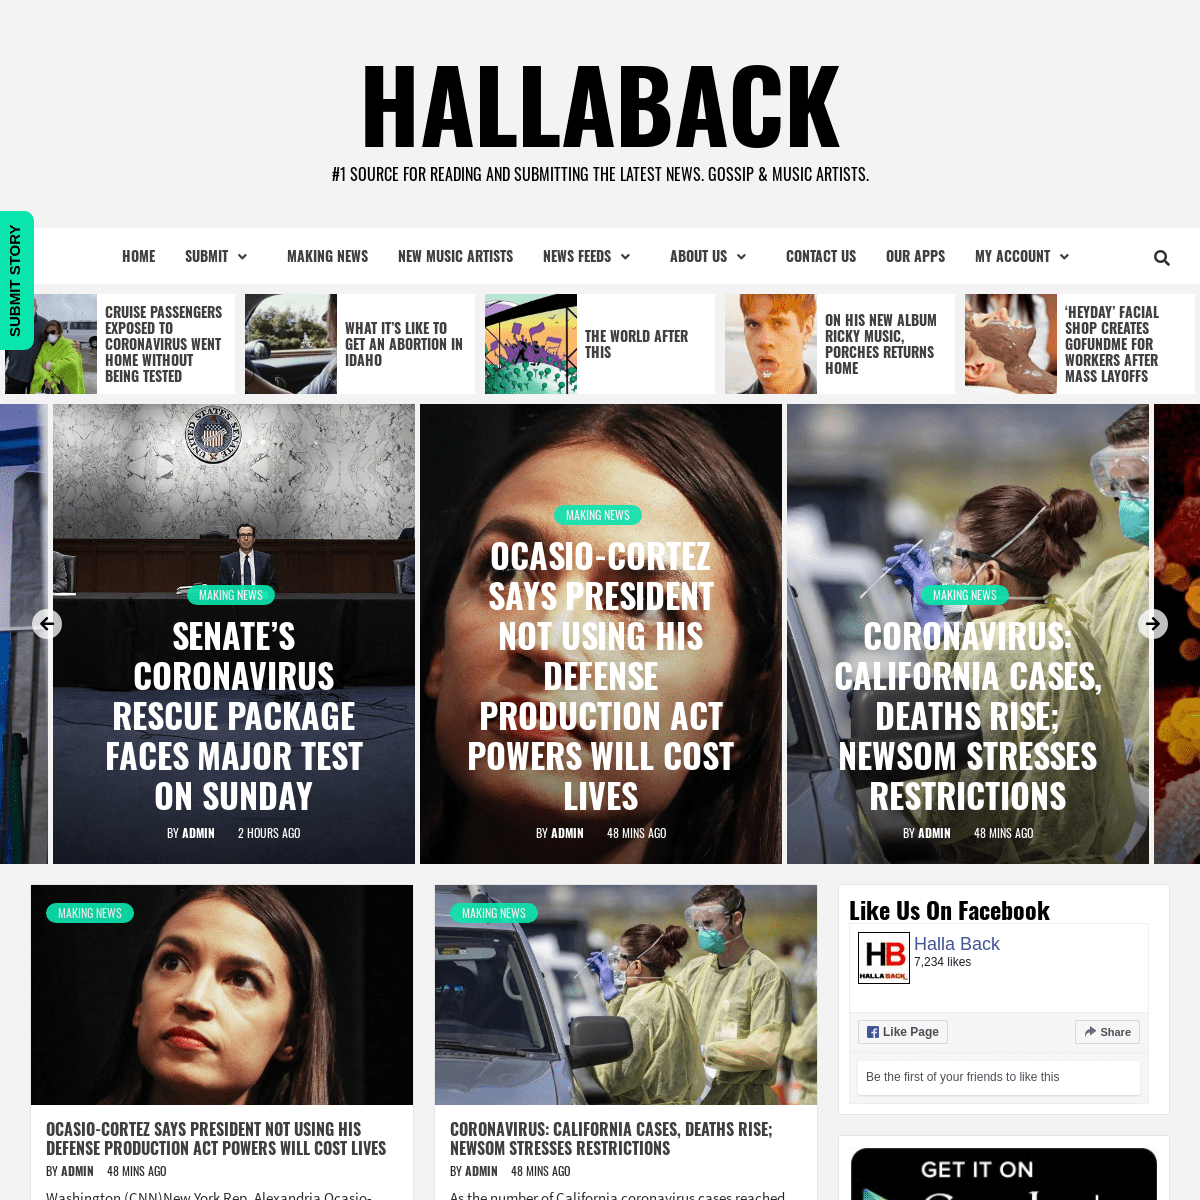 A complete backup of hallaback.com